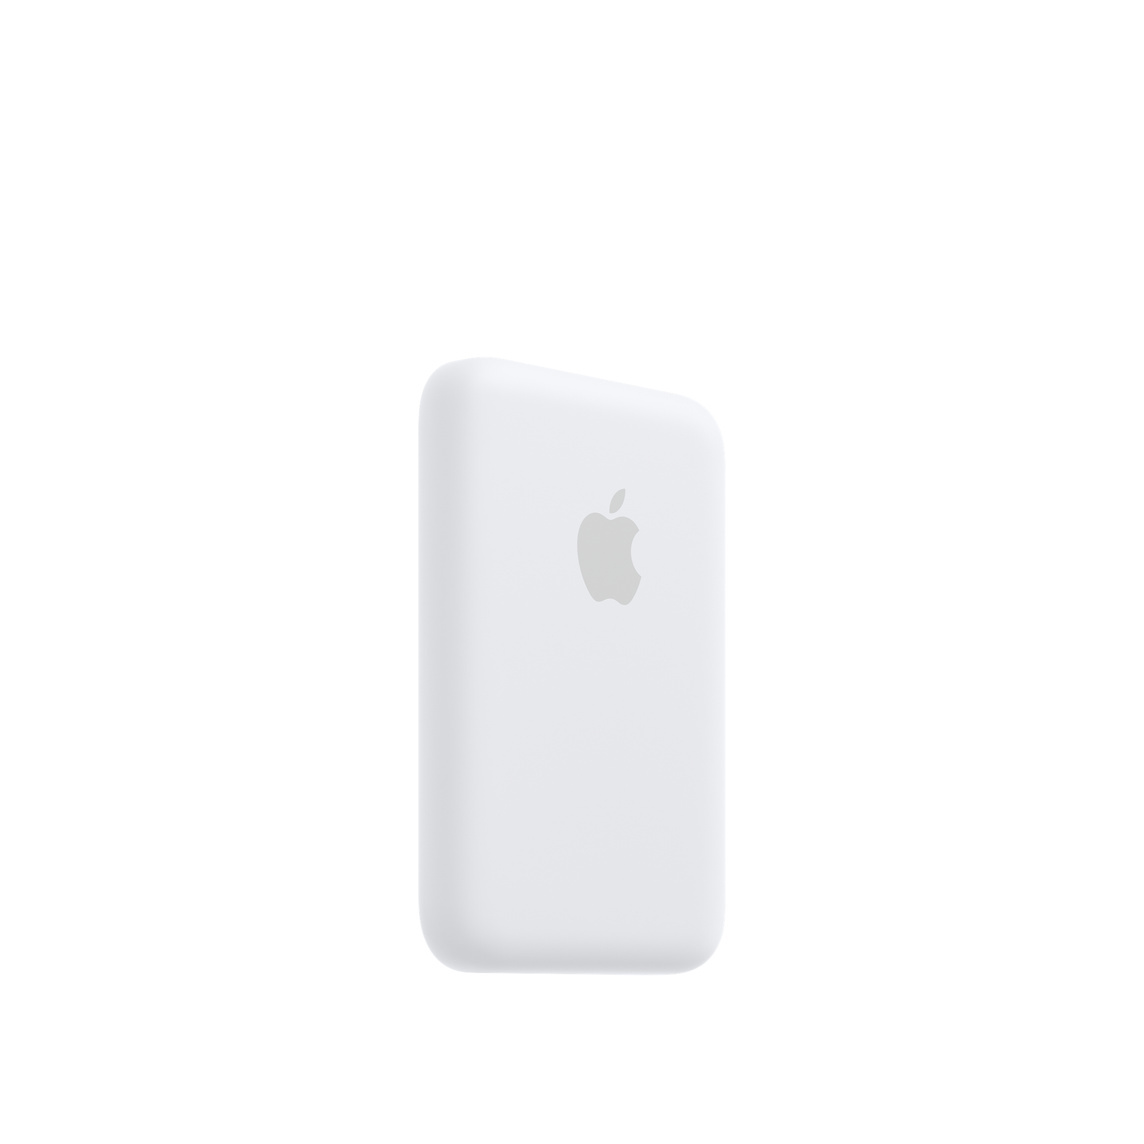 Apple lansează o baterie care se fixează pe spatele unui iPhone 12, prelungind durata de funcţionare - Imaginea 2